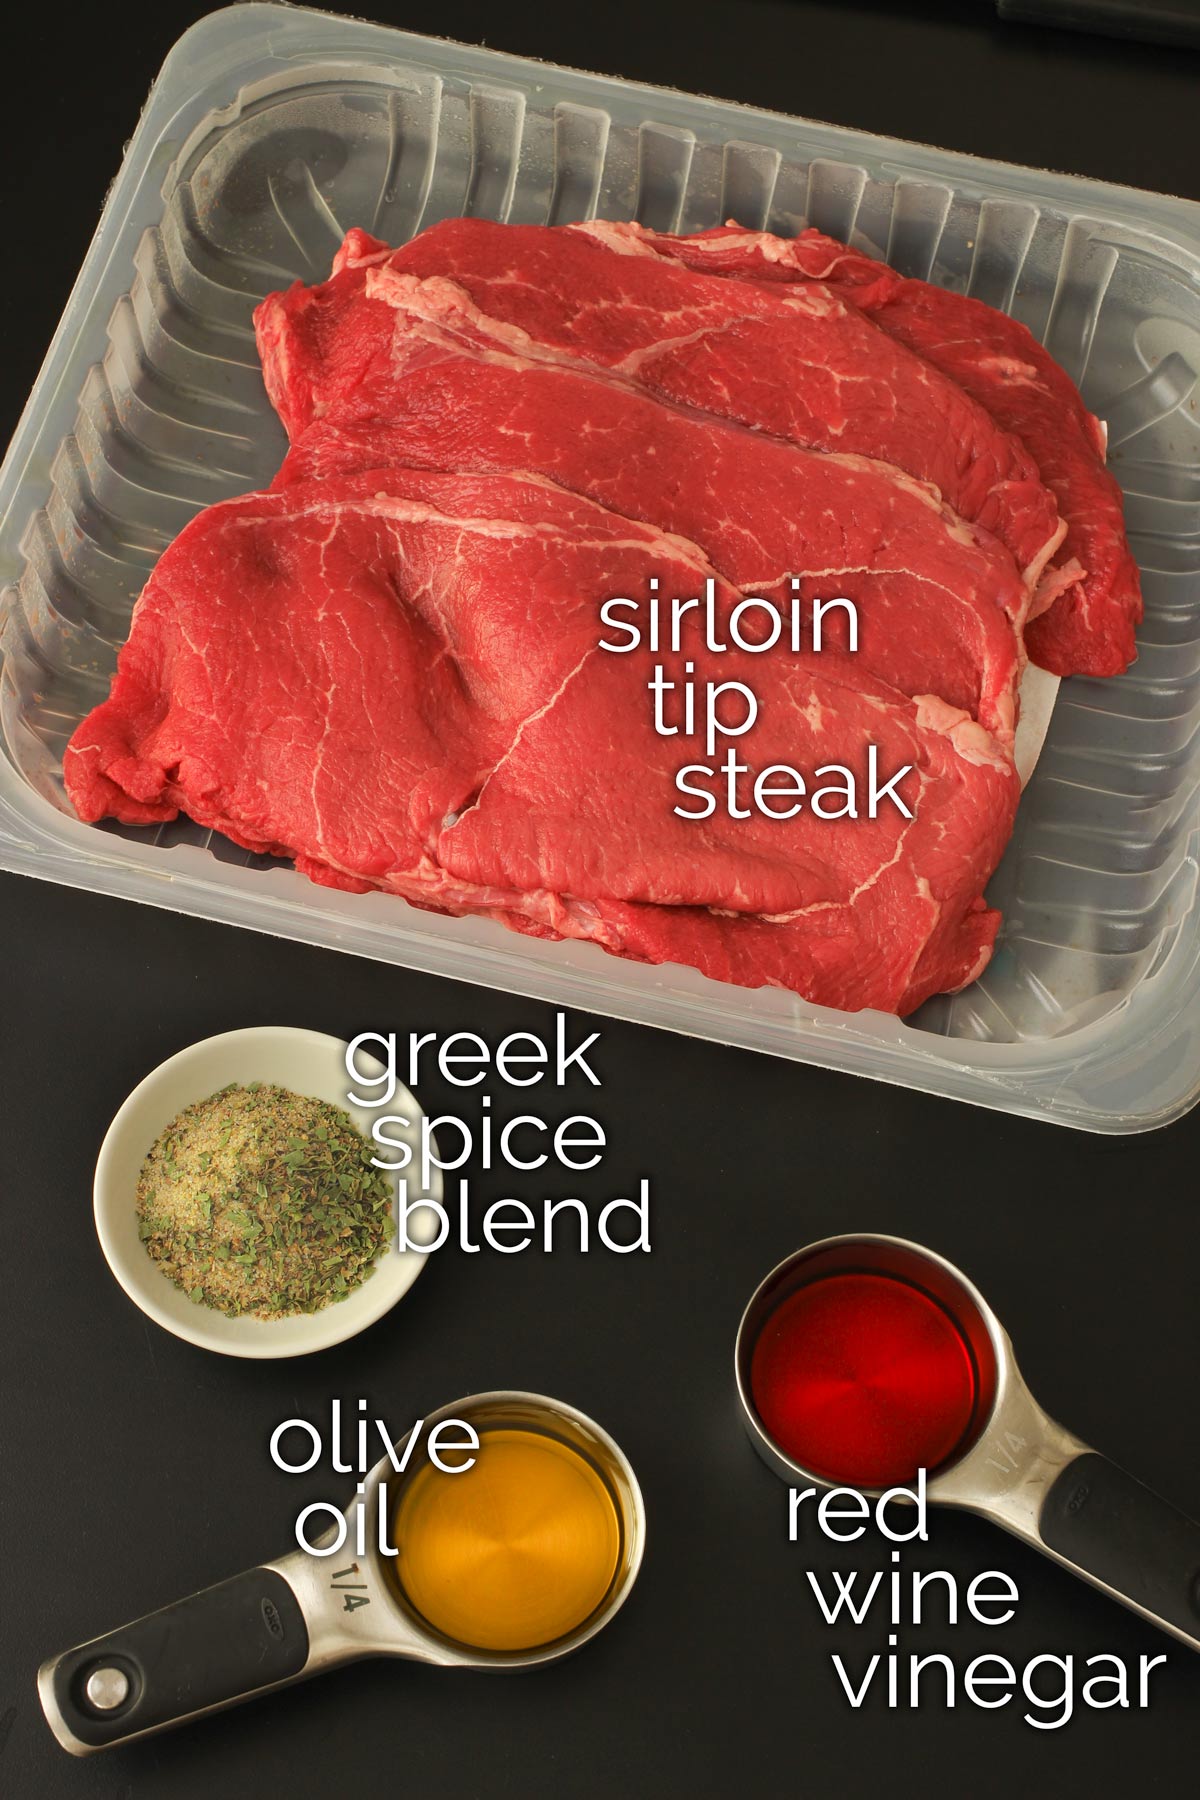 sirloin tip steak in plastic carton on tabletop alongside ingredients for greek marinade.